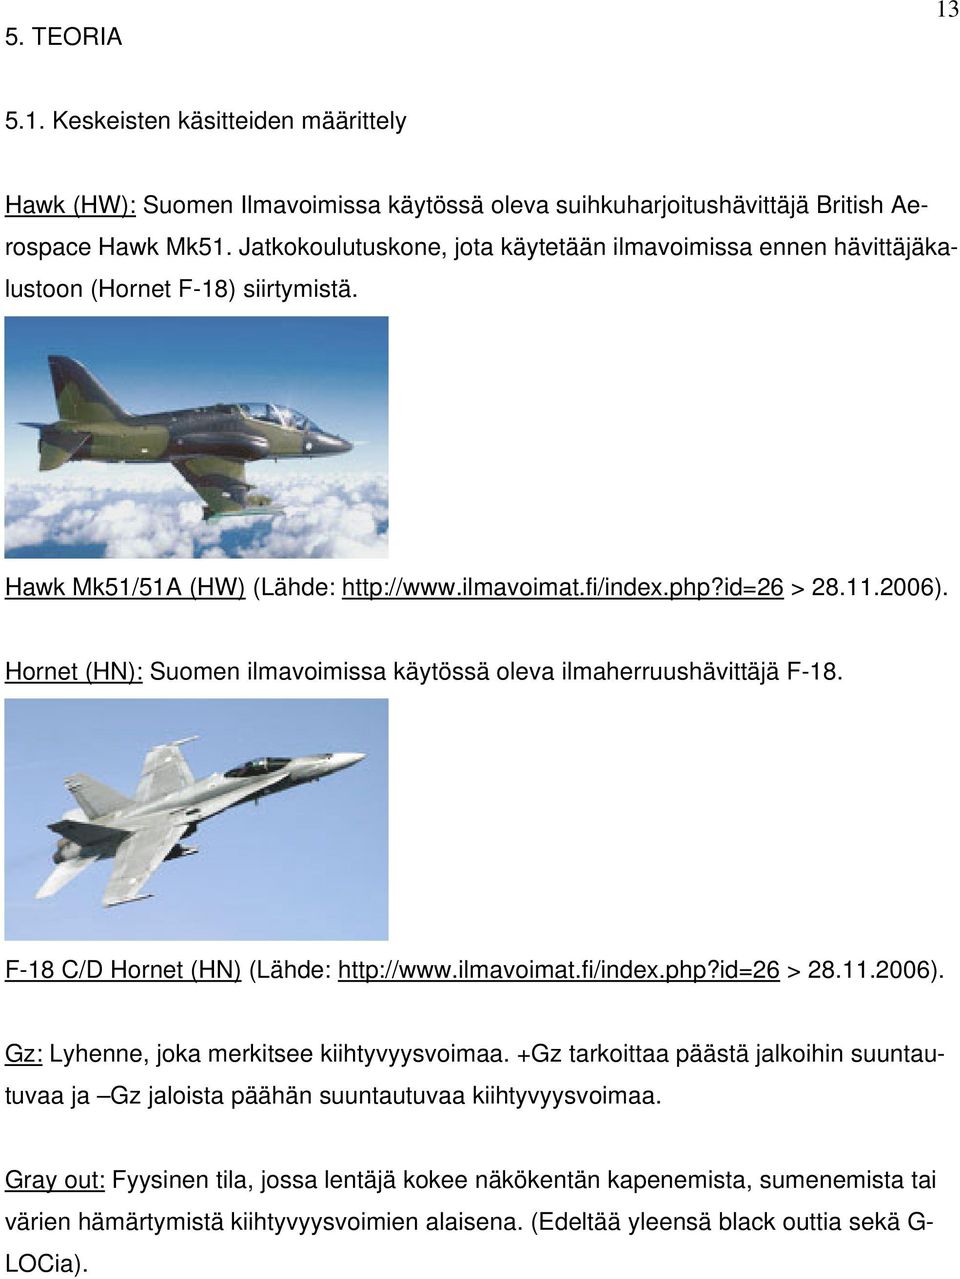 Hornet (HN): Suomen ilmavoimissa käytössä oleva ilmaherruushävittäjä F-18. F-18 C/D Hornet (HN) (Lähde: http://www.ilmavoimat.fi/index.php?id=26 > 28.11.2006).